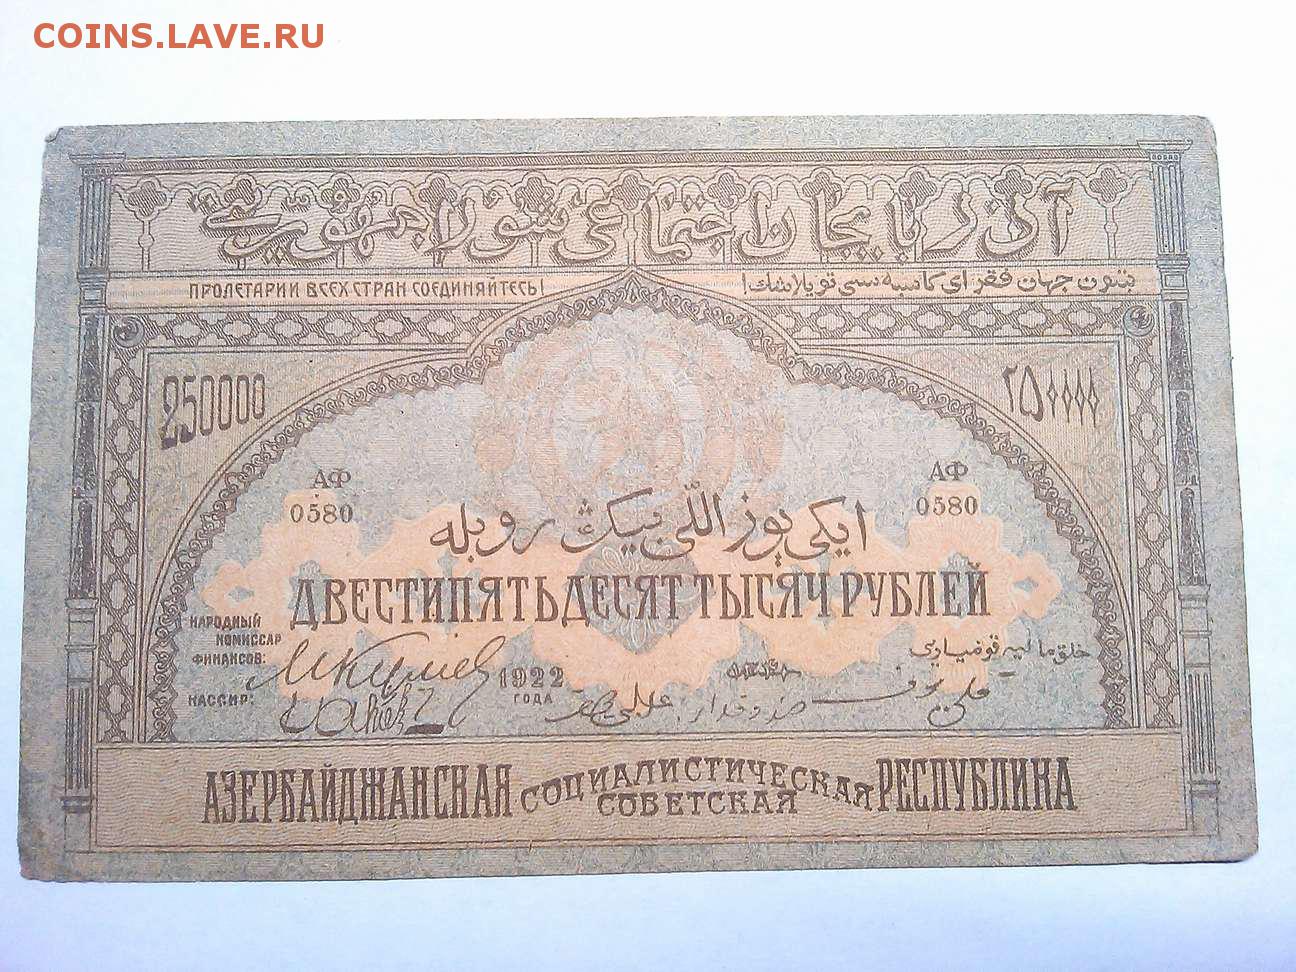 1 рубль сколько стоит азербайджан